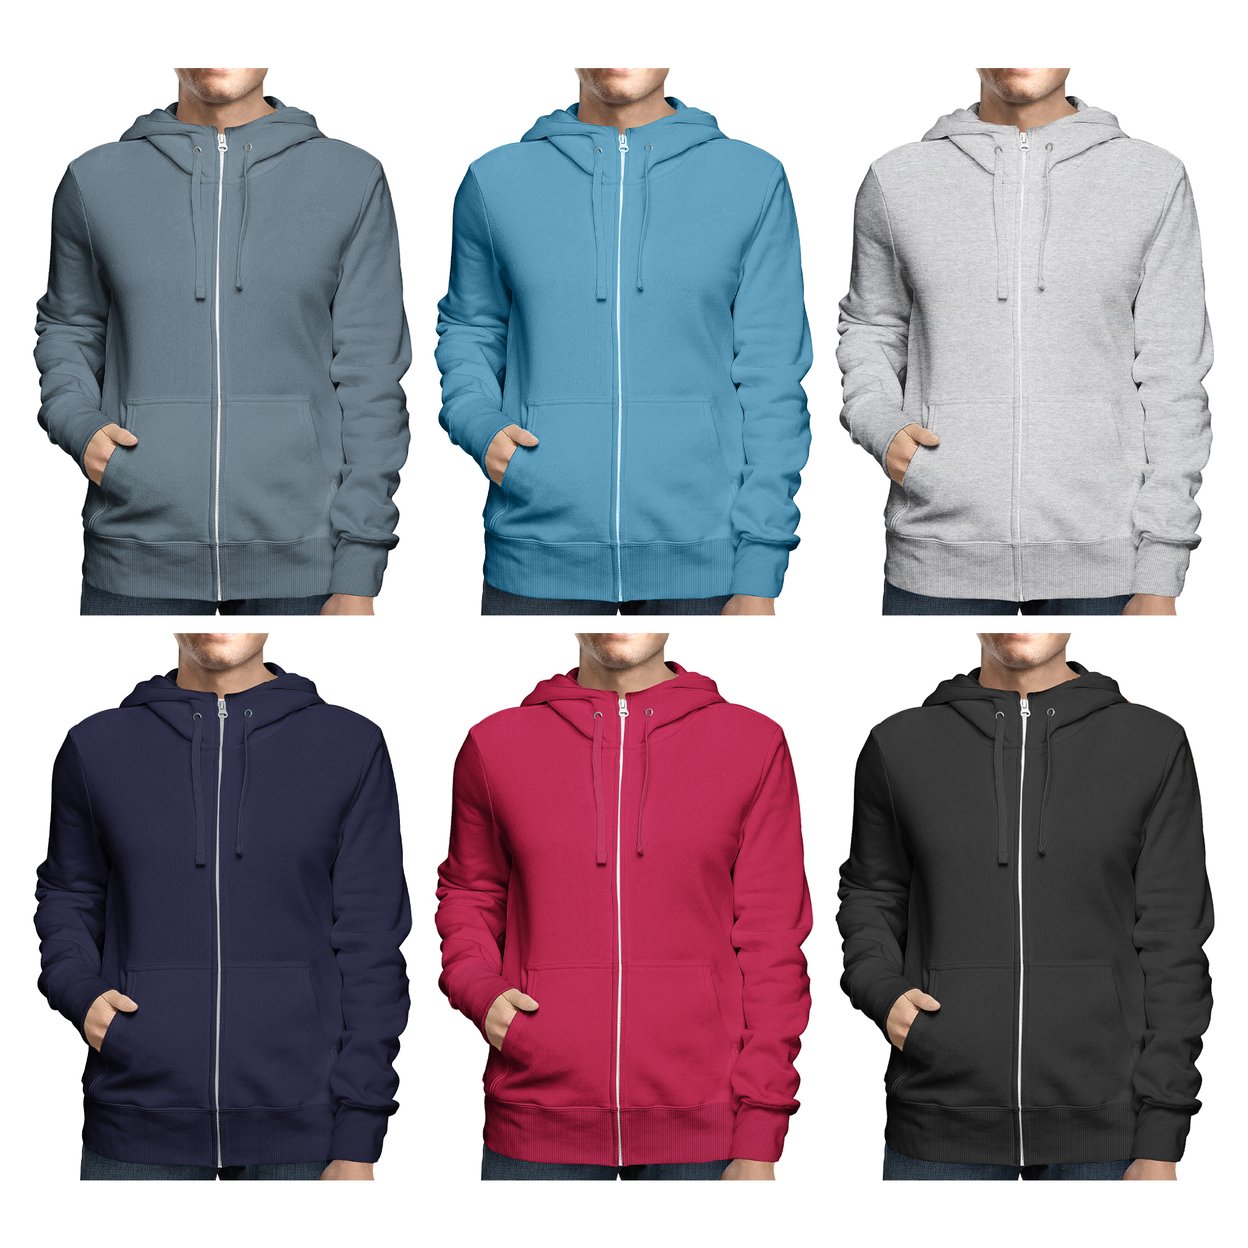 Men's Winter Warm Cozy Full Zip-Up Fleece Lined Soft Hoodie Sweatshirt - Grey, X-large